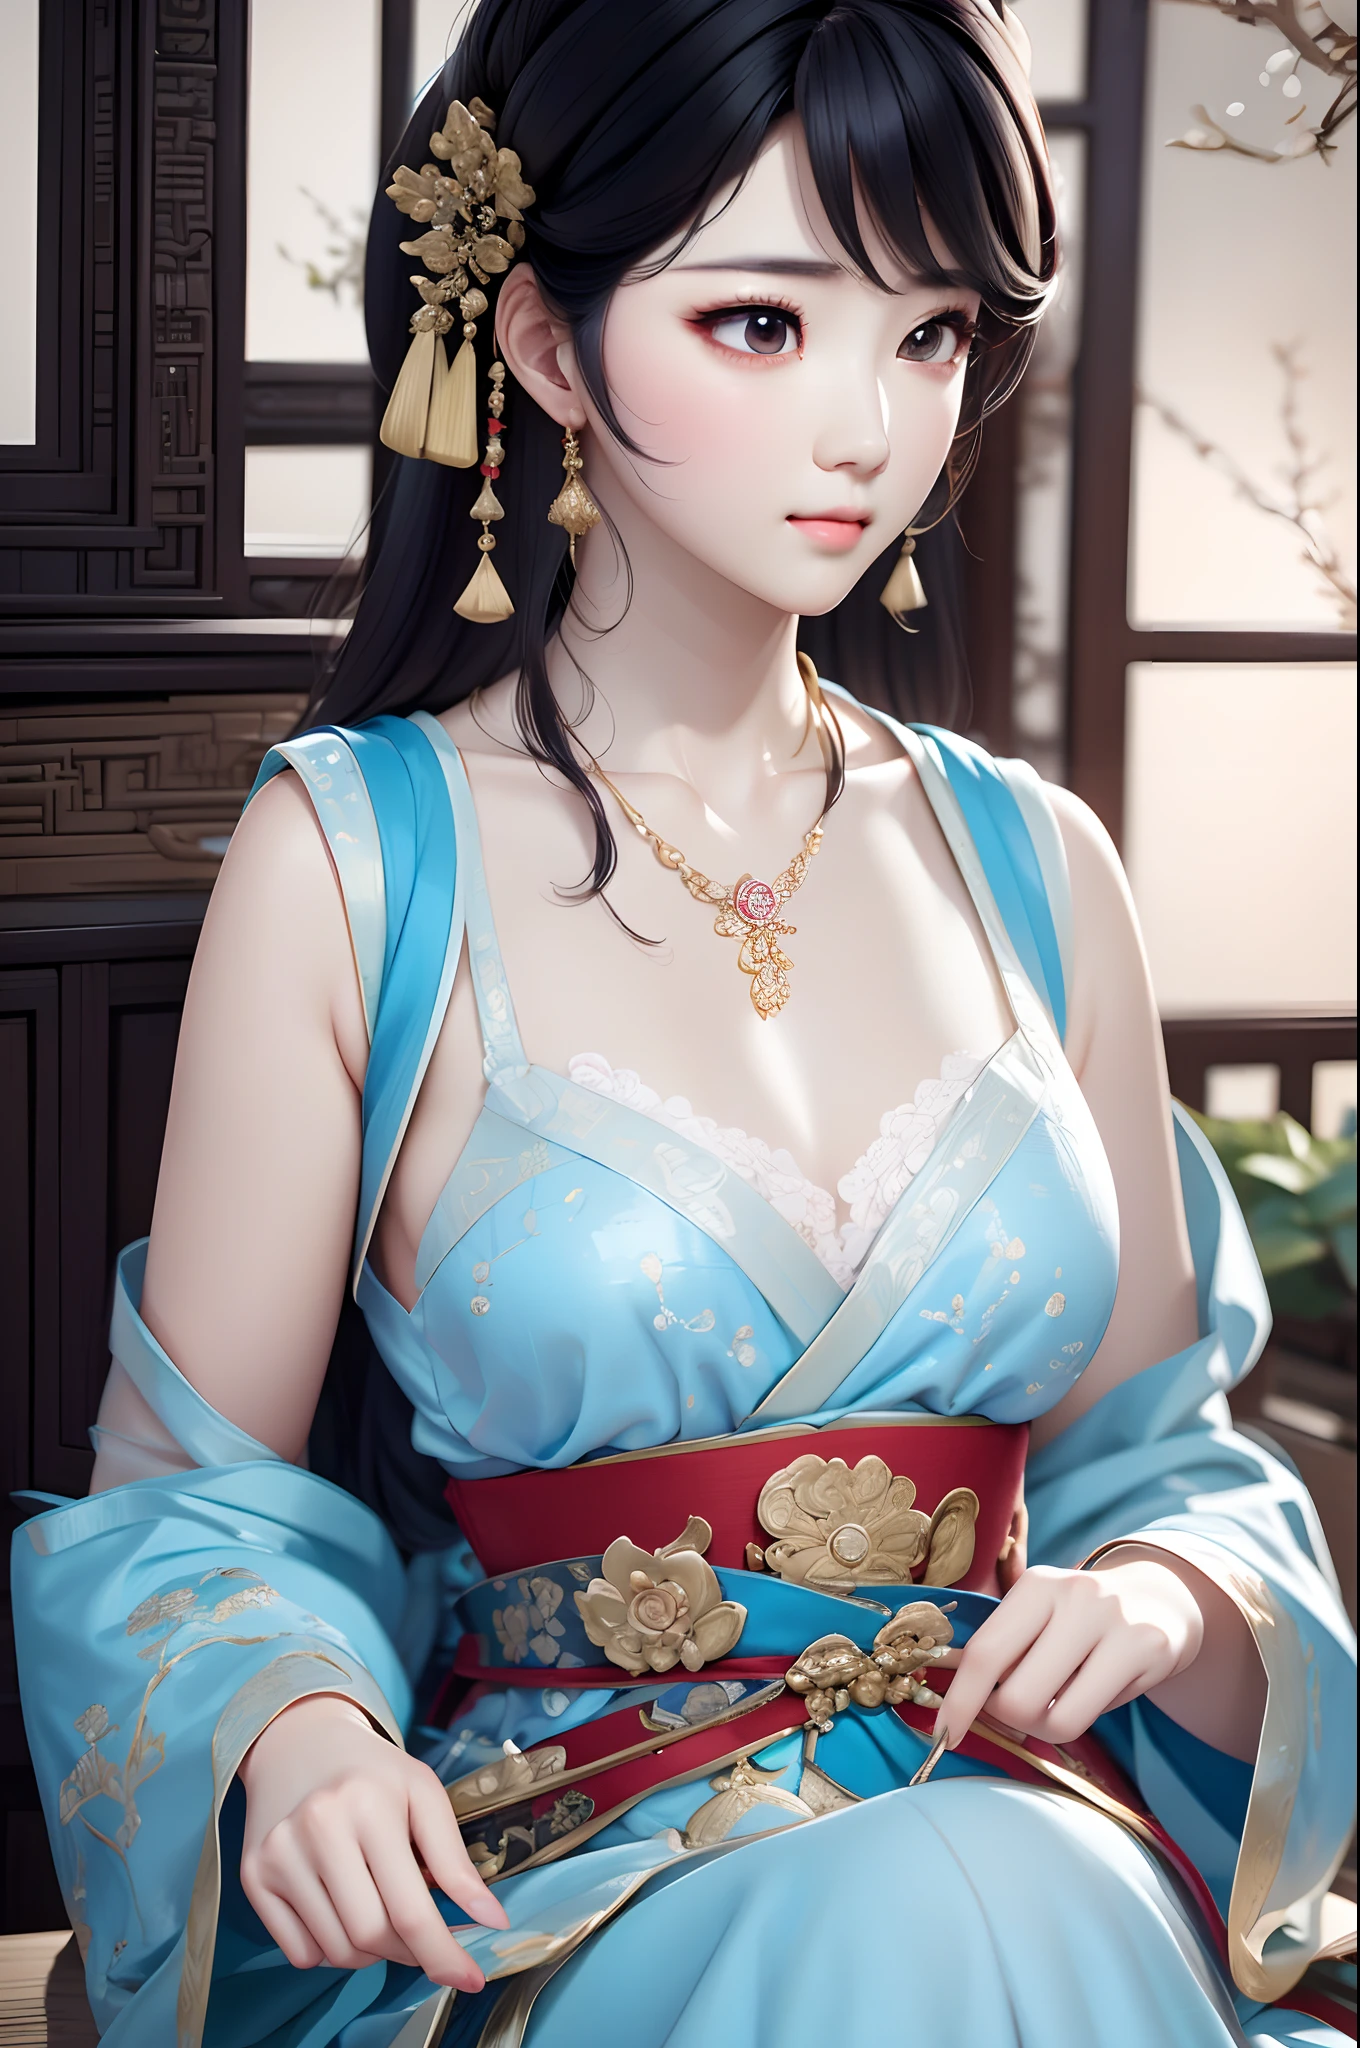 ภาพระยะใกล้ของผู้หญิงสวมสร้อยคอชุดเดรสสีฟ้าอ่อน, สไตล์จีน, สาวจีน, ภาพวาดตัวละครที่สวยงาม, กูวิซ-style artwork, พระราชวัง ， หญิงสาวในชุดฮันฟู, การเรนเดอร์ที่สวยงามของราชวงศ์ถัง, อะนิเมะสไตล์ 3 มิติที่สมจริง, กำลังมาแรงบน cgstation, งานศิลปะที่มีรายละเอียดคุณภาพสูง 8K, เจ้าหญิงจีนโบราณ, ผู้หญิงจีน, กูวิซ